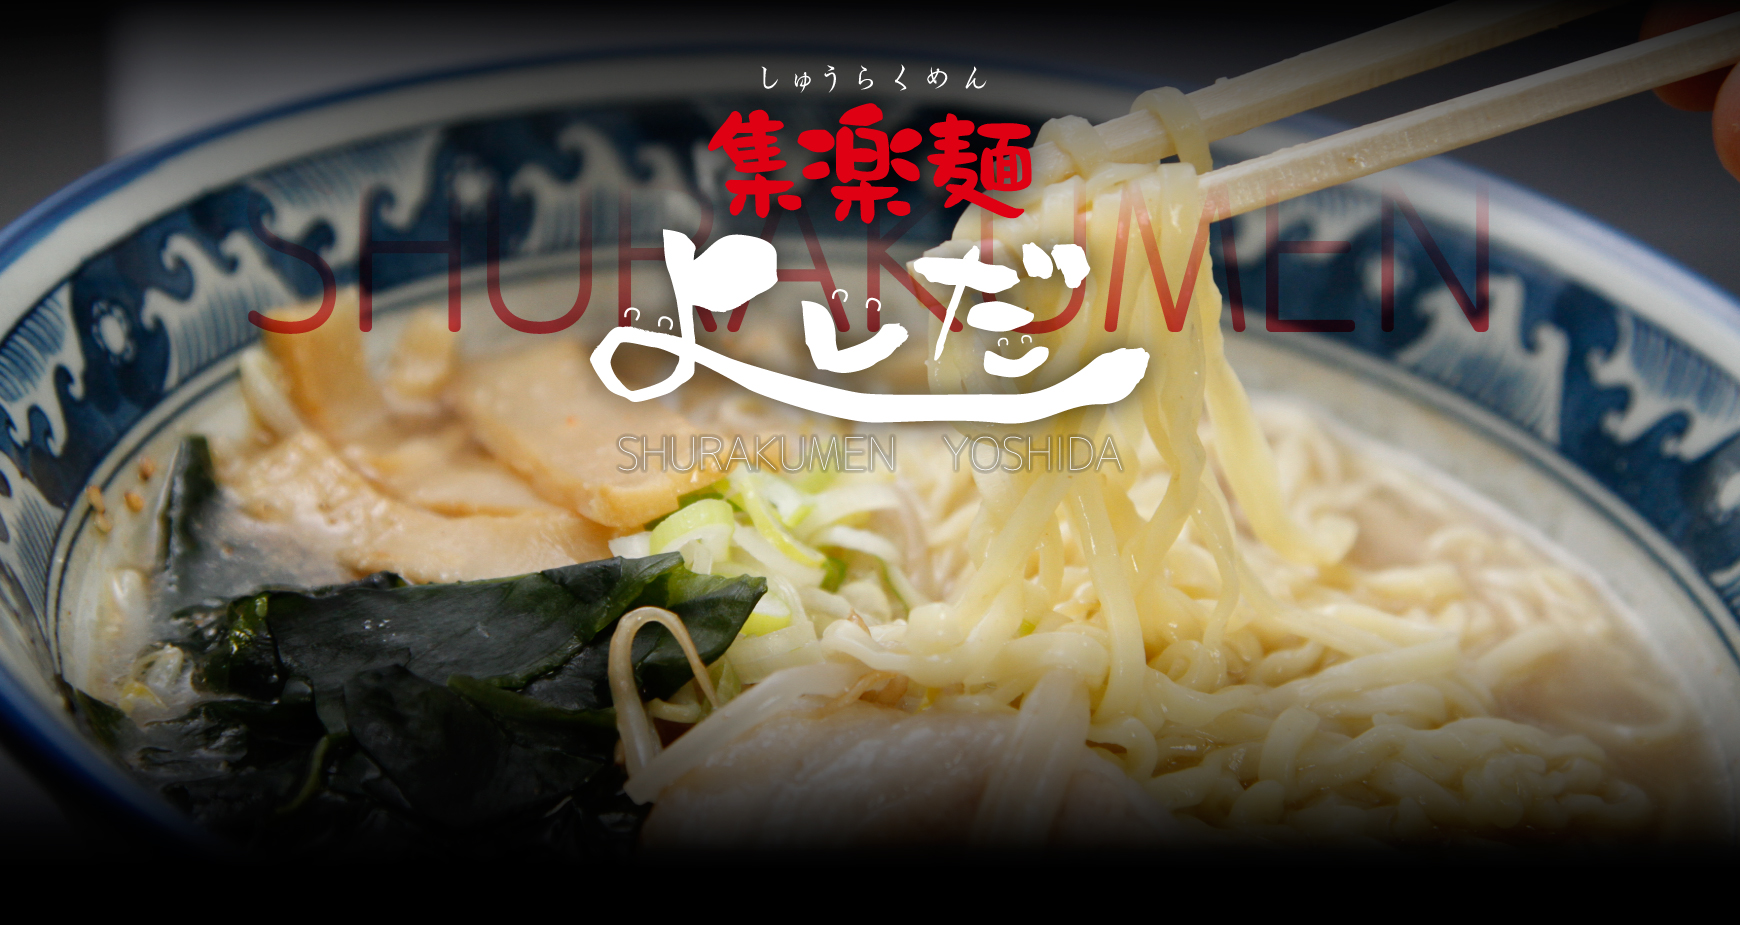 群馬県太田市のらーめん店、「集楽麺よしだ」です。お腹いっぱい、笑顔いっぱいのラーメンをご笑味ください。